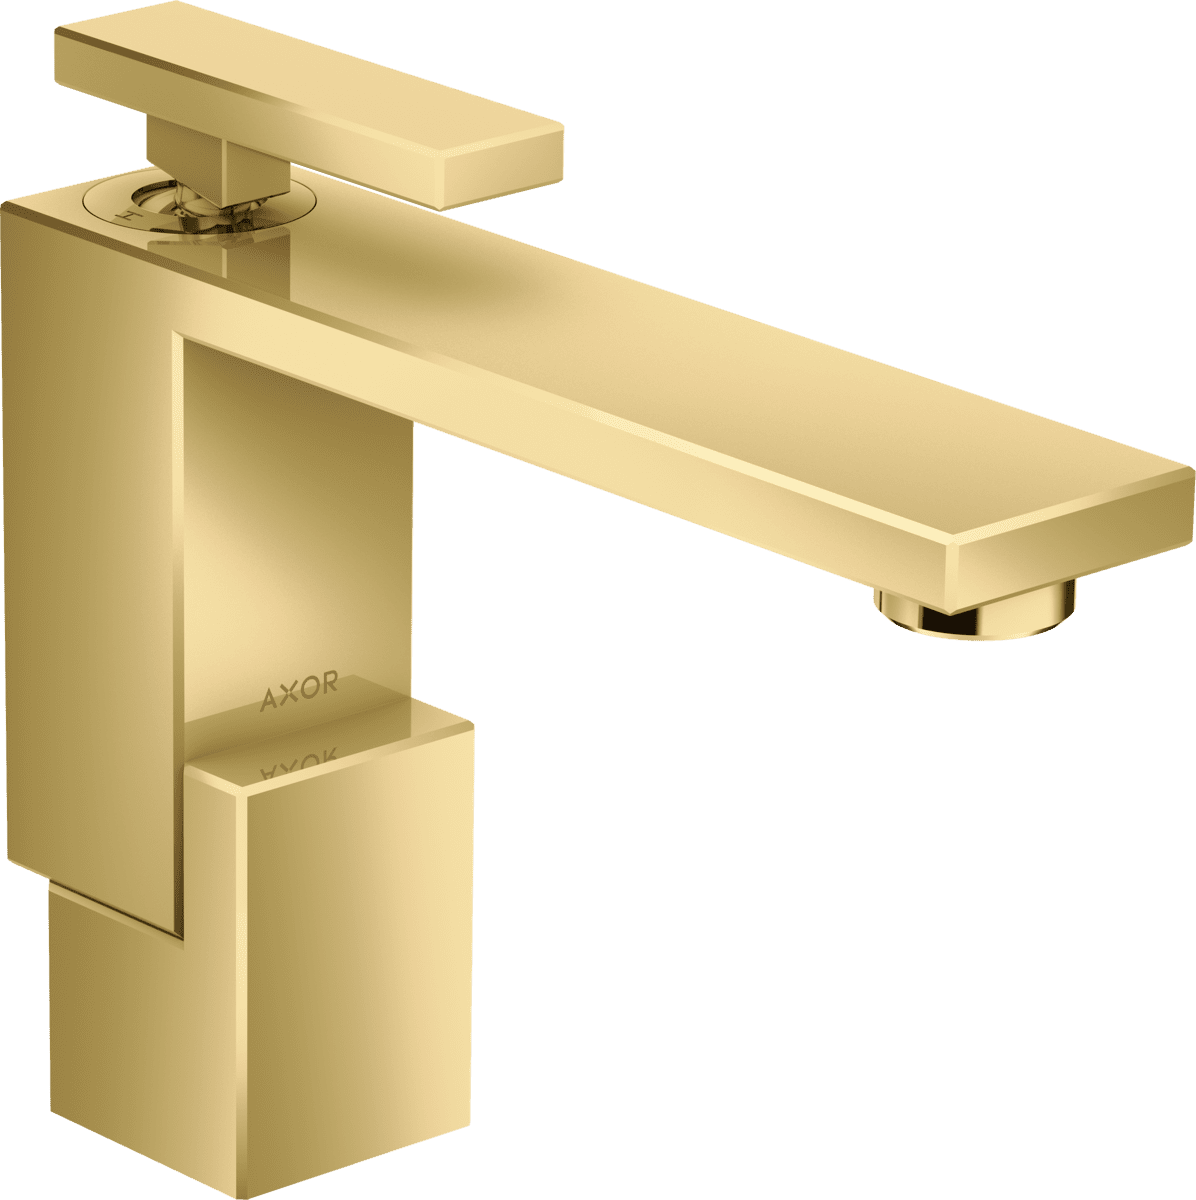 HANSGROHE AXOR Edge Tek kollu lavabo bataryası 130, bas-aç gider seti ile #46010990 - Parlak Altın Optik resmi